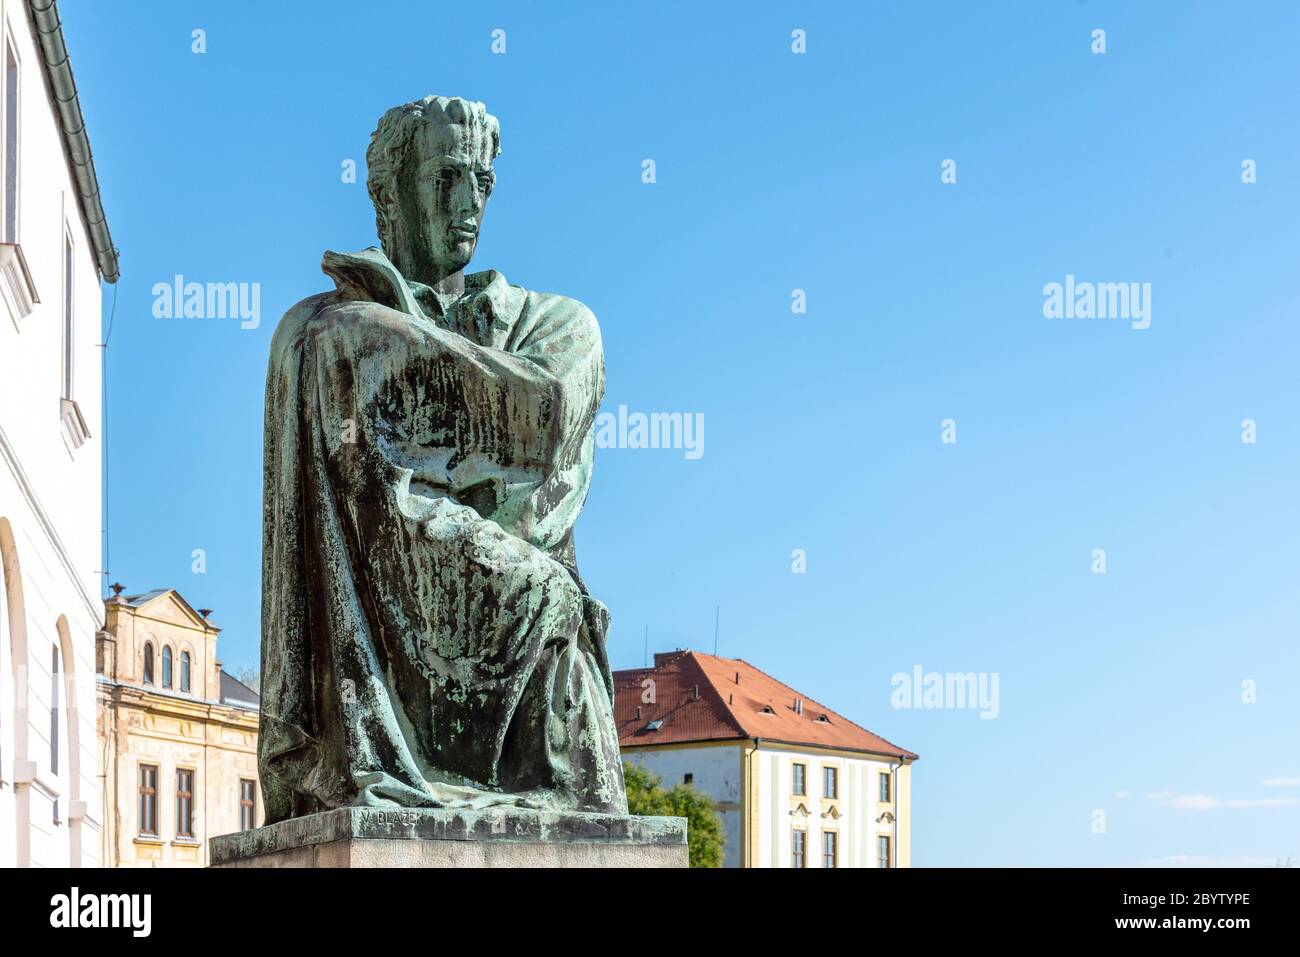 LITOMERICE, TSCHECHISCHE REPUBLIK - 23. SEPTEMBER 2018: Statue des Dichters Karel Hynek Macha in Litomerice, Tschechische Republik. Stockfoto